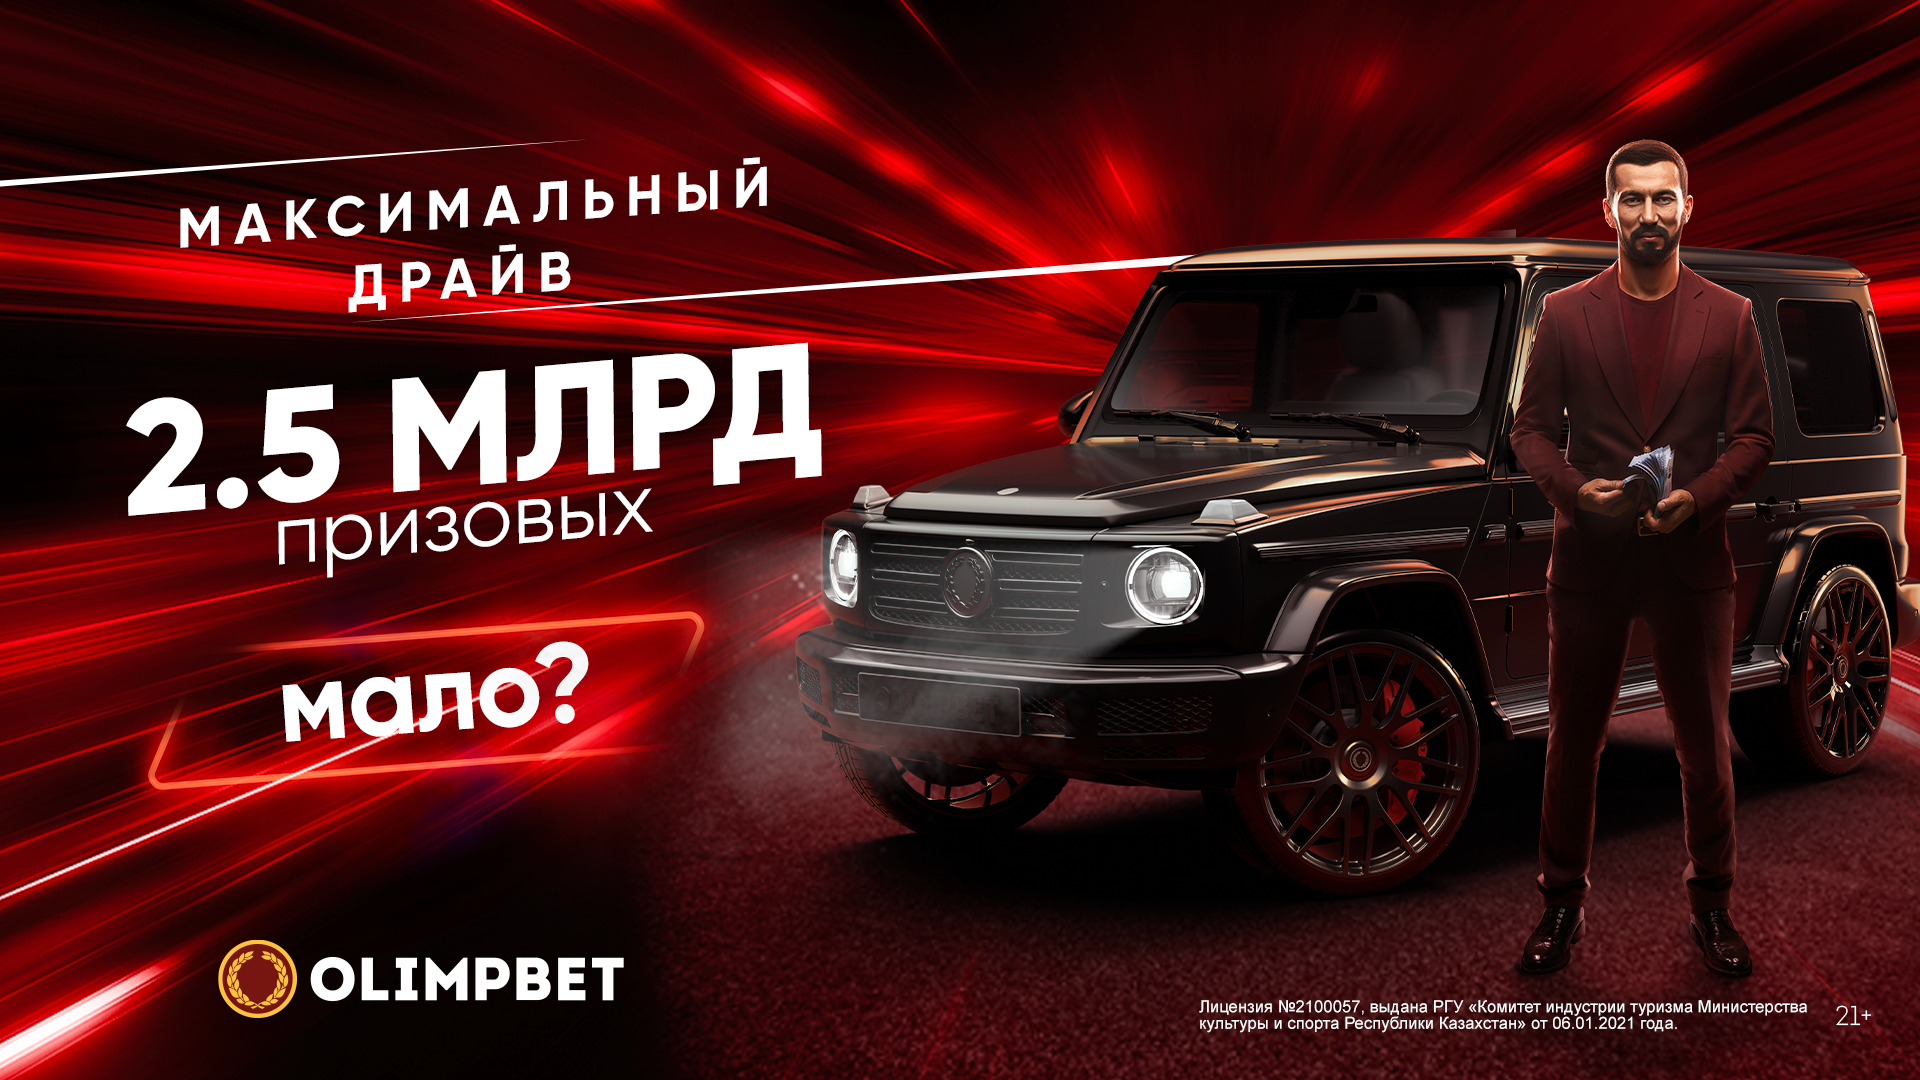 19 октября Olimpbet разыграет Toyota Camry в рамках акции «Максимальный драйв»